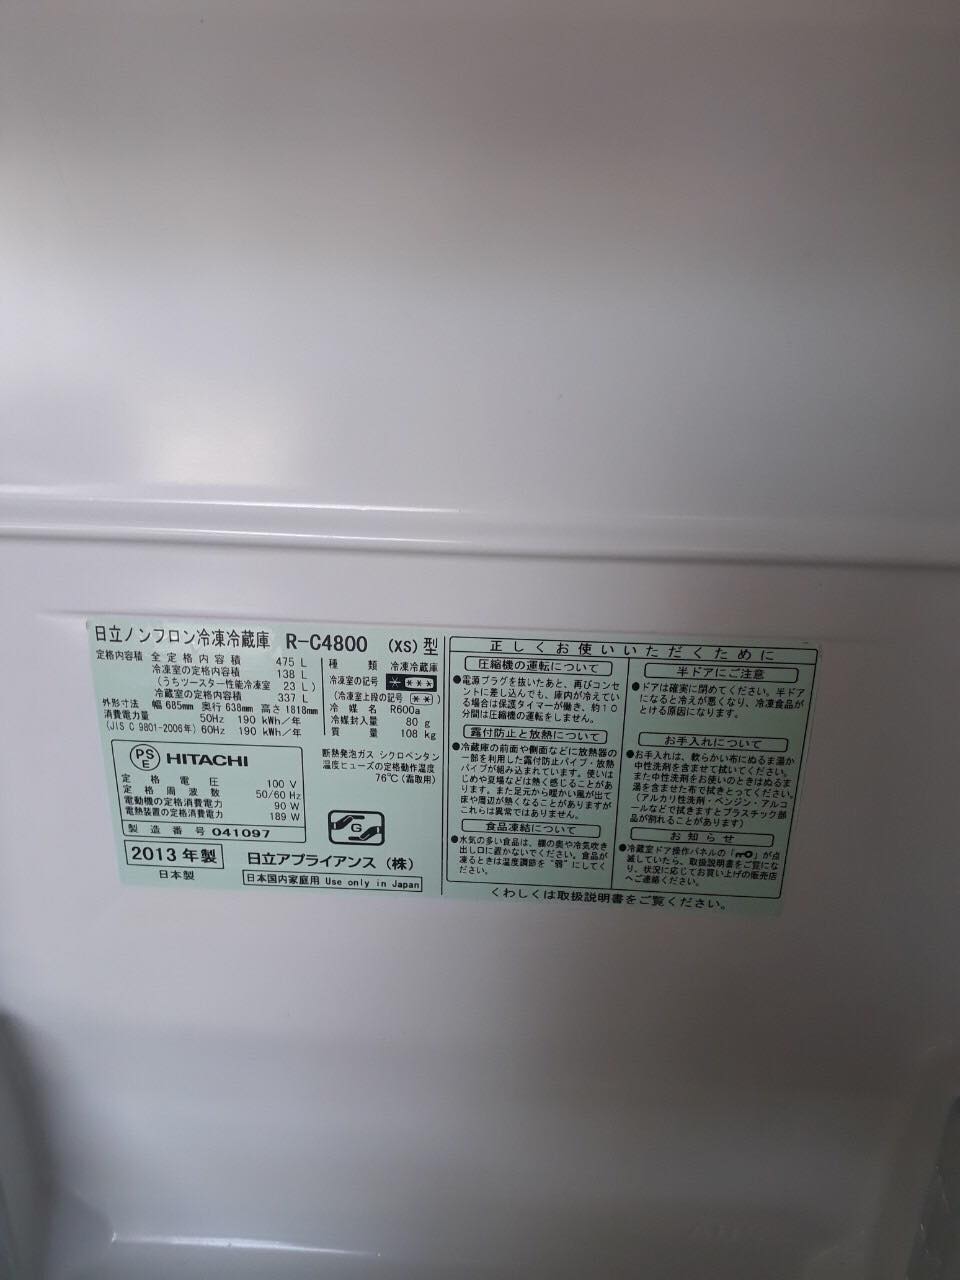 Tủ lạnh nội địa Nhật Hitachi R-C4800 (XS) 2013